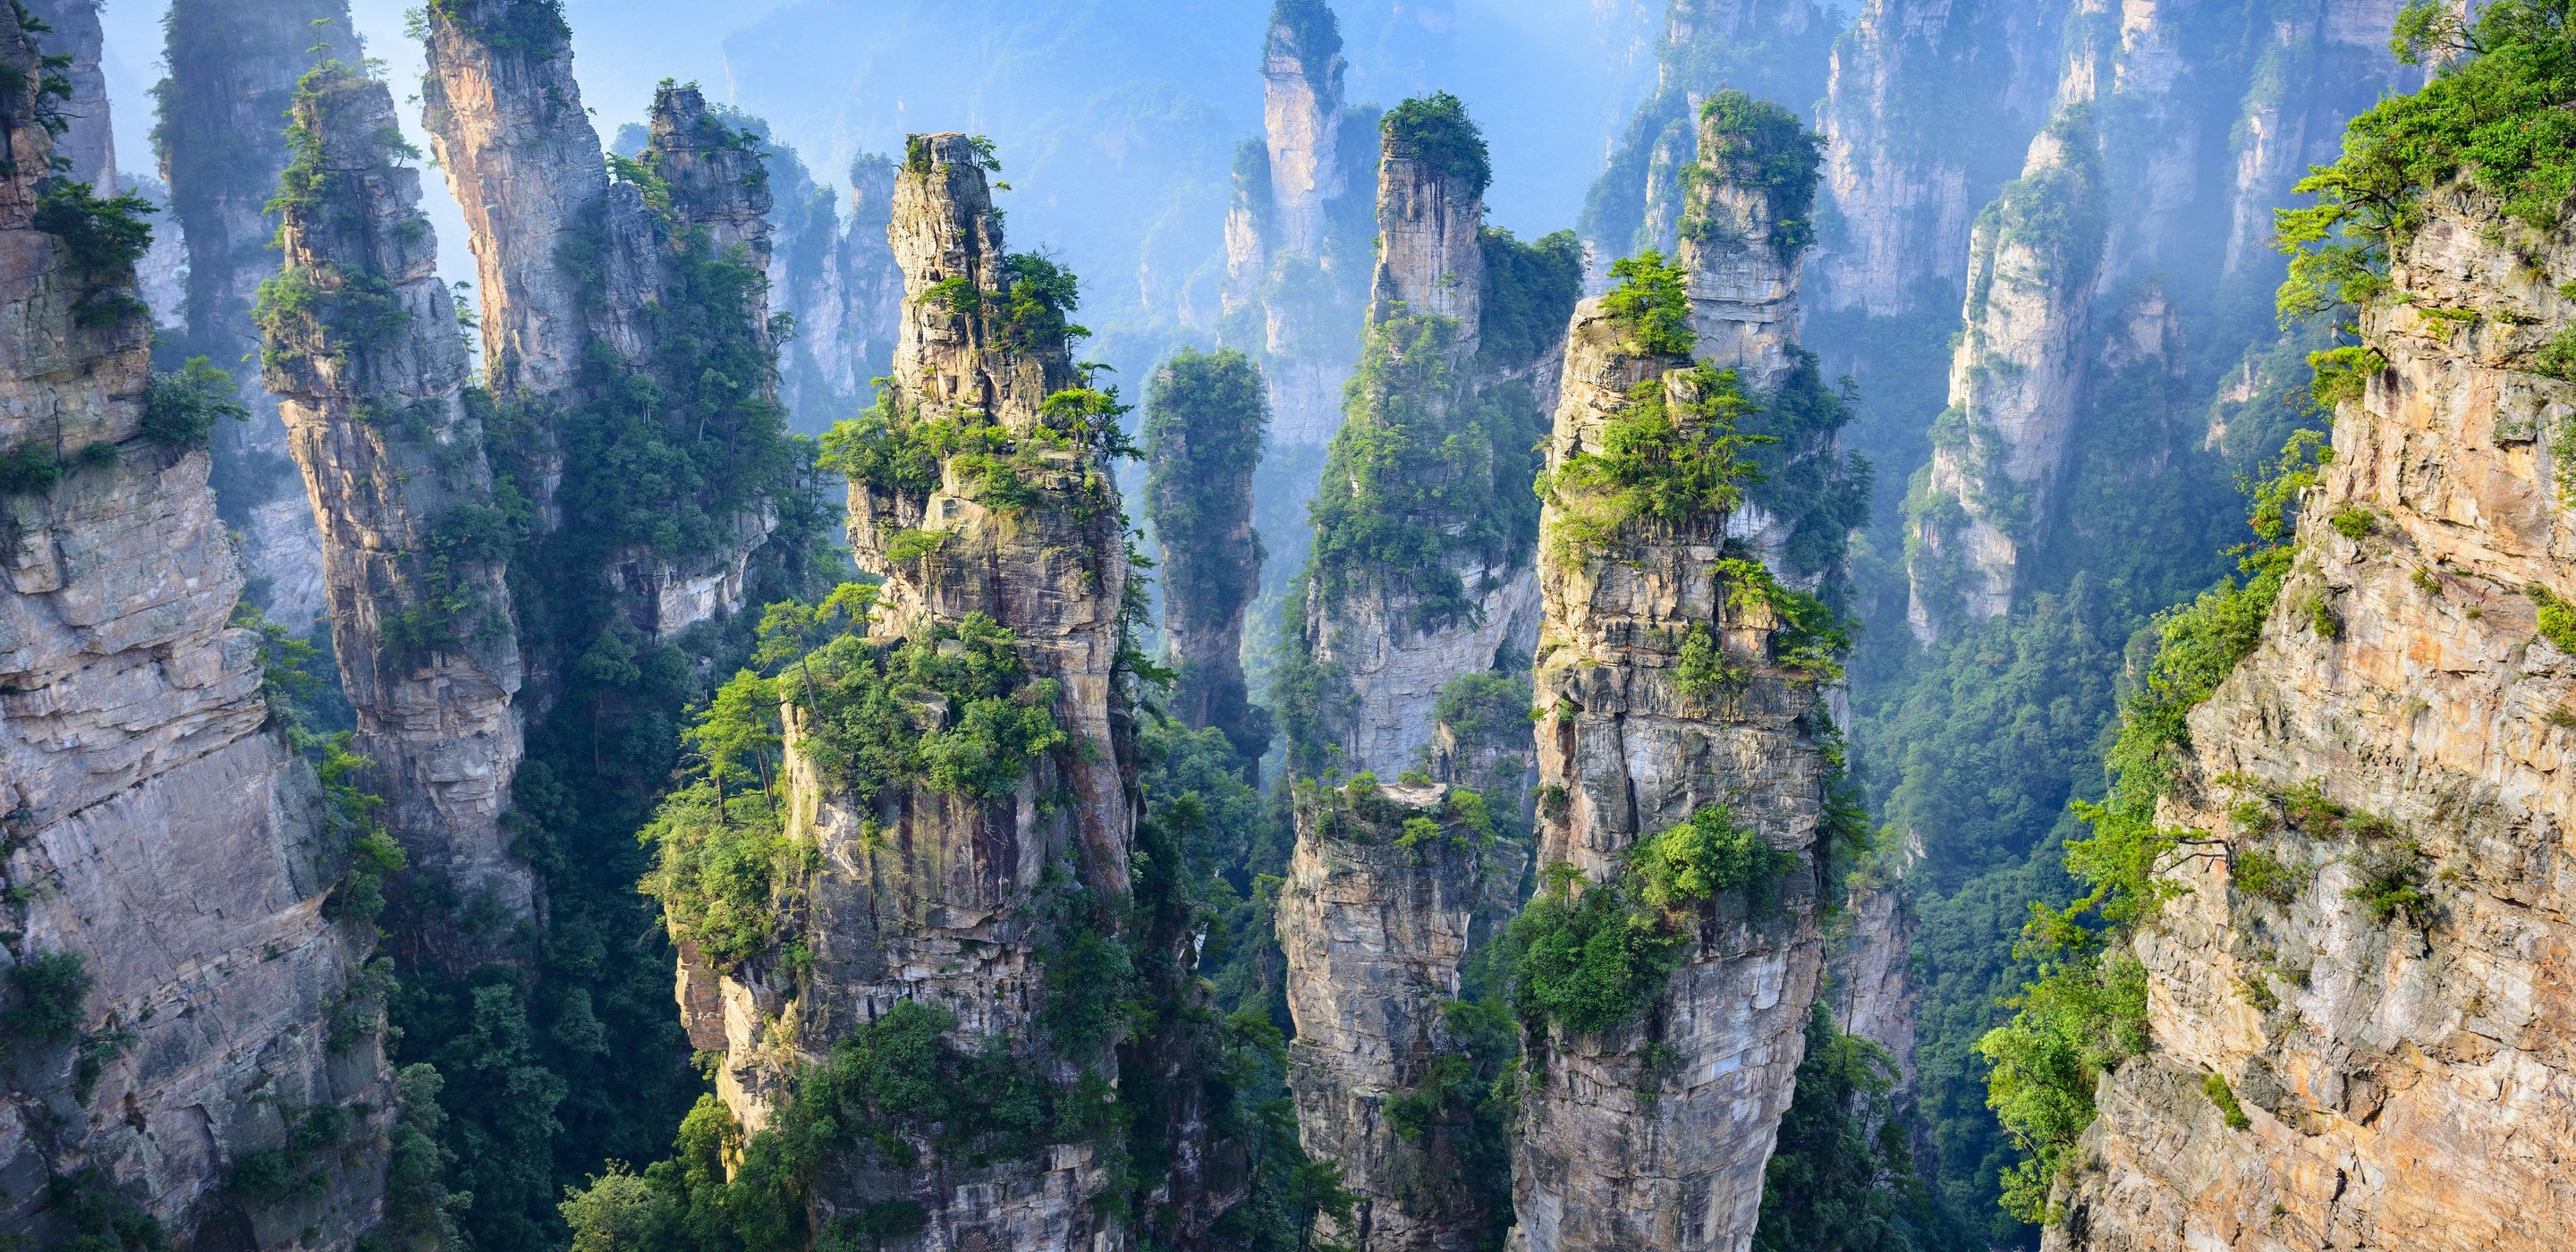 Zhangjiajie National Forest Park, China mountains, 4K China wallpapers, Mountain backgrounds, 2880x1400 Dual Screen Desktop